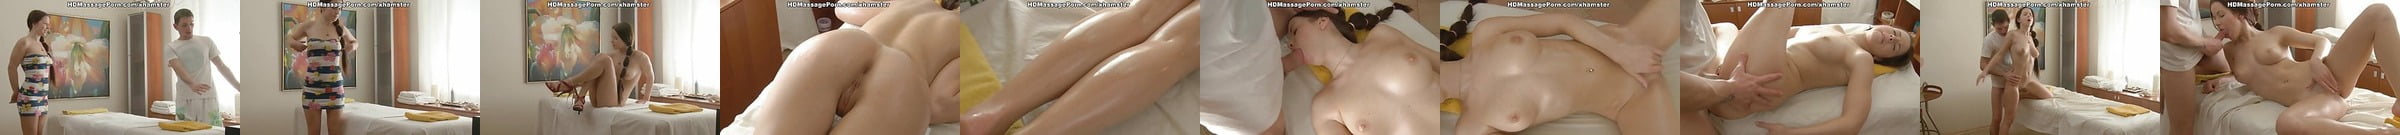 Die Bestbewerteten Porno Videos In Der Kategorie Massage Girl Sex